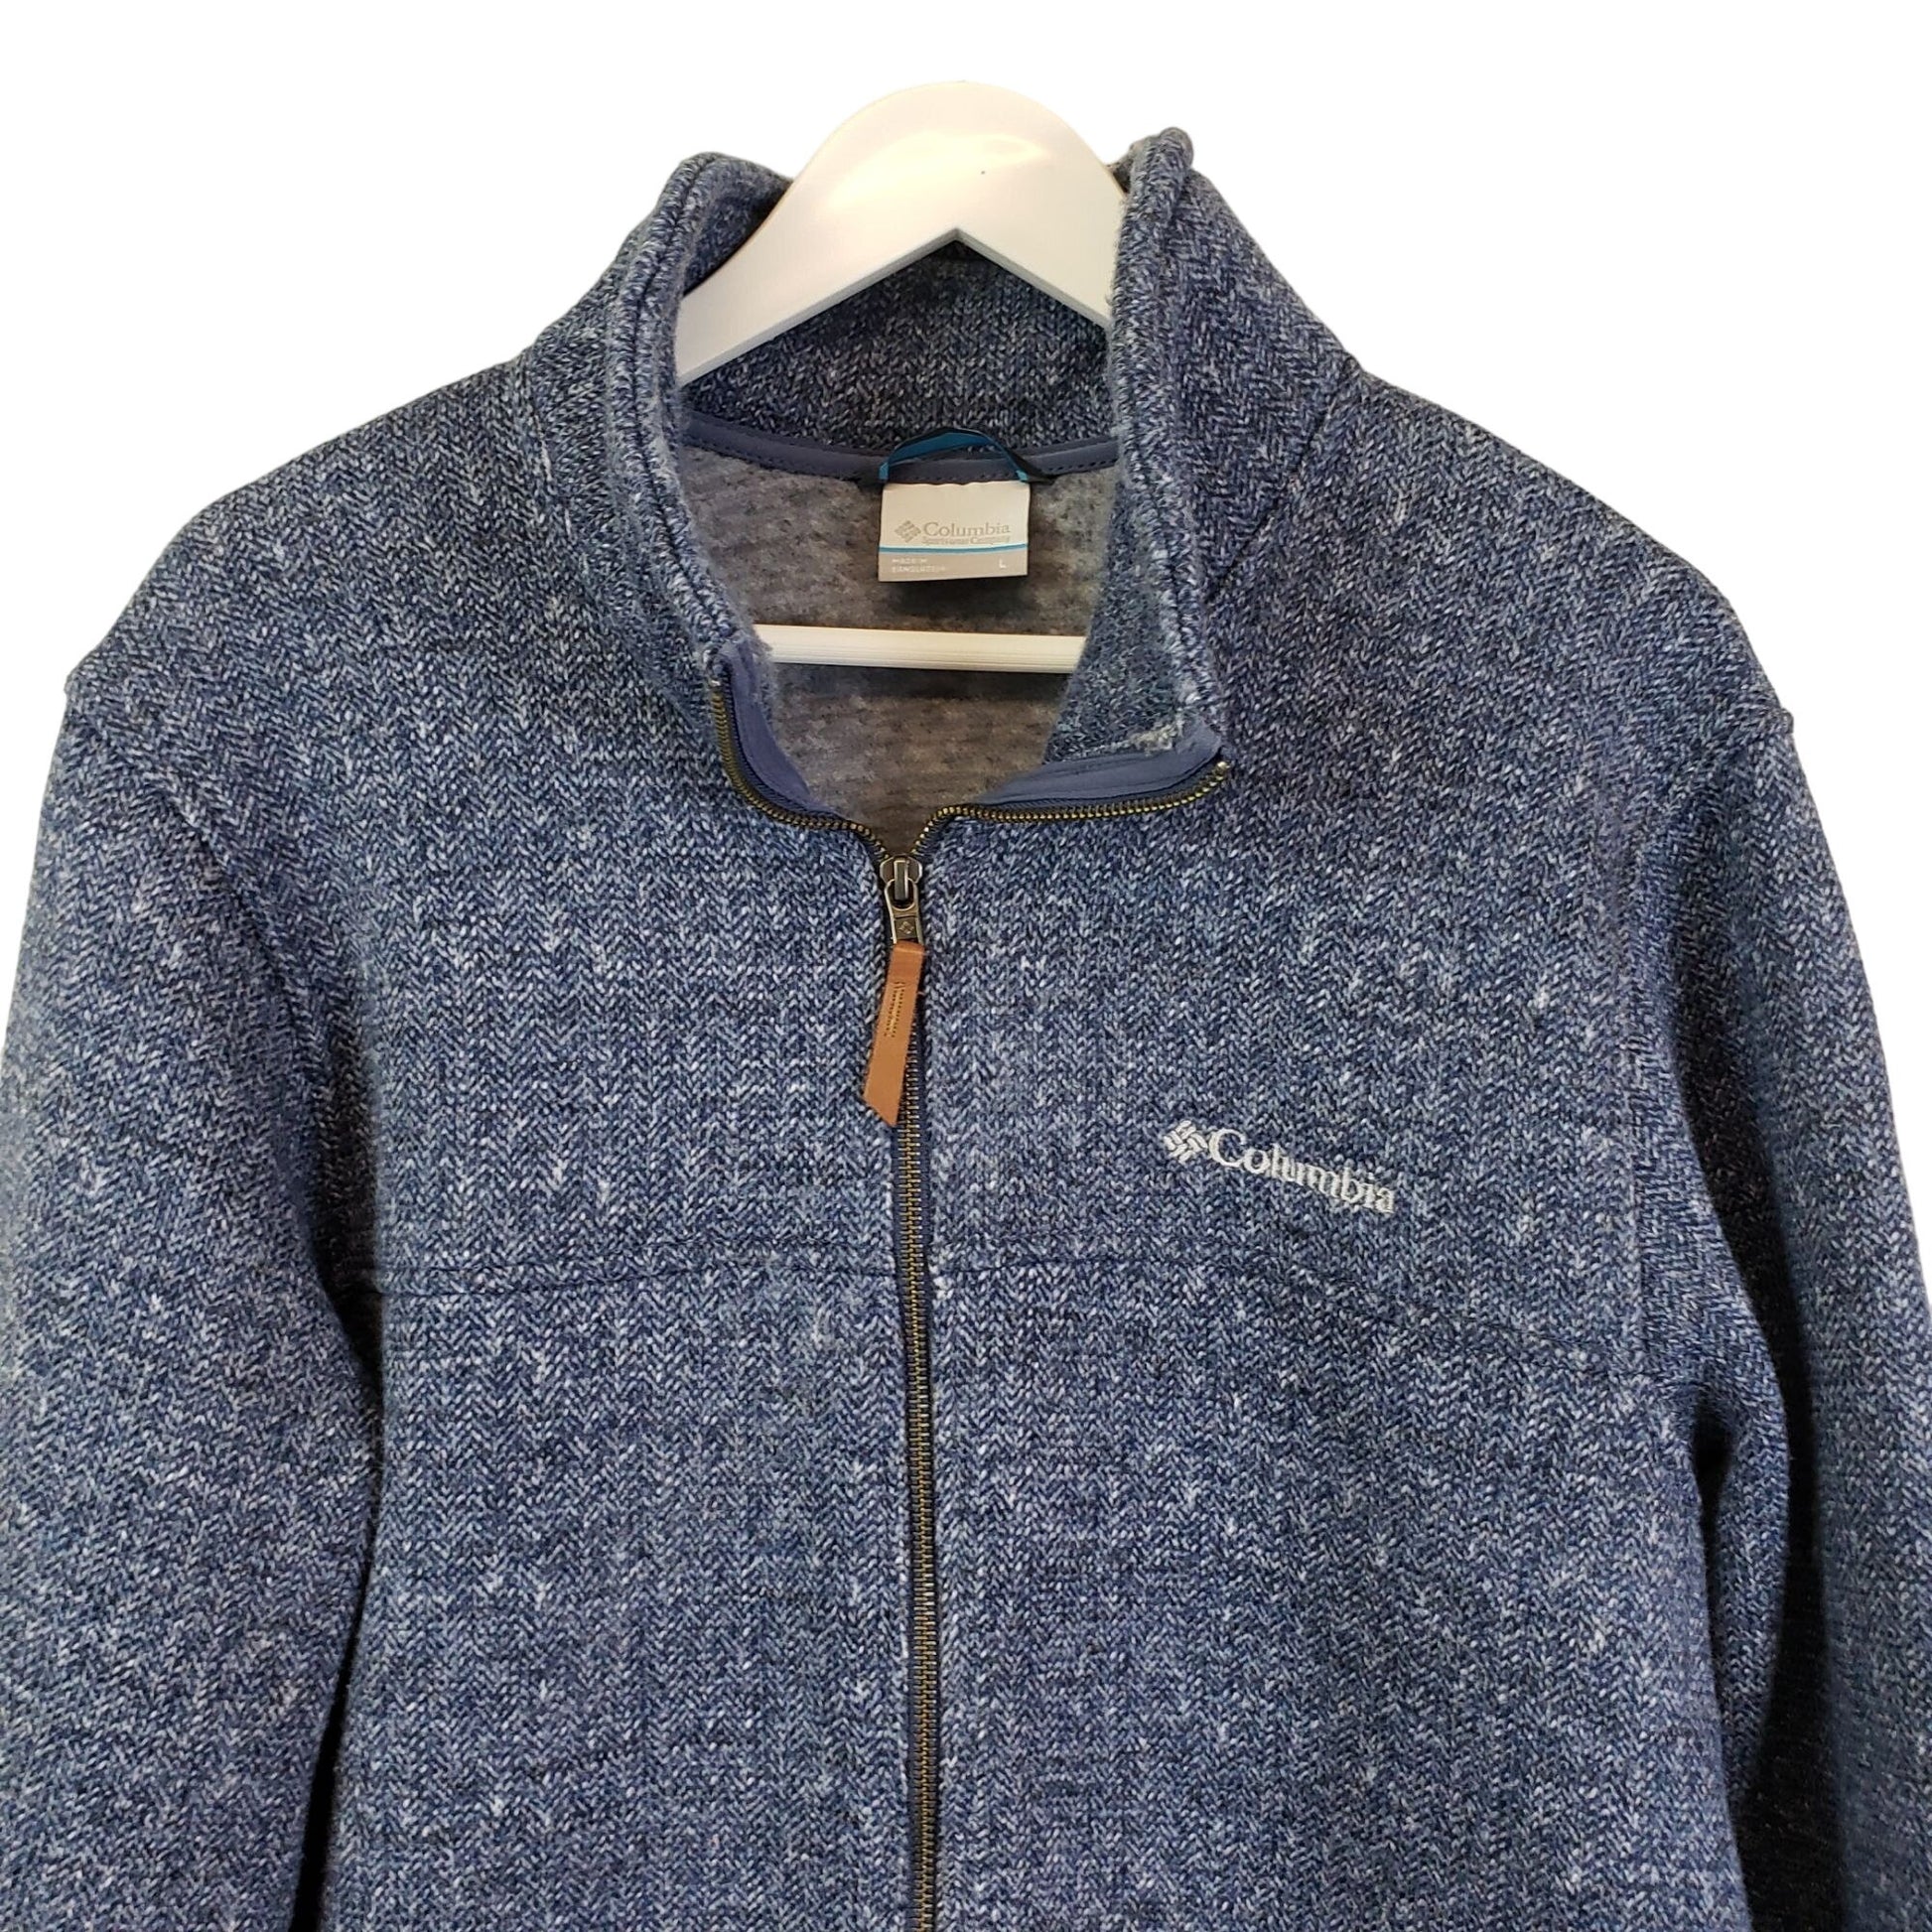 Columbia Full Zip Lightly Fleece Lined Activewear Jacket Size Large –